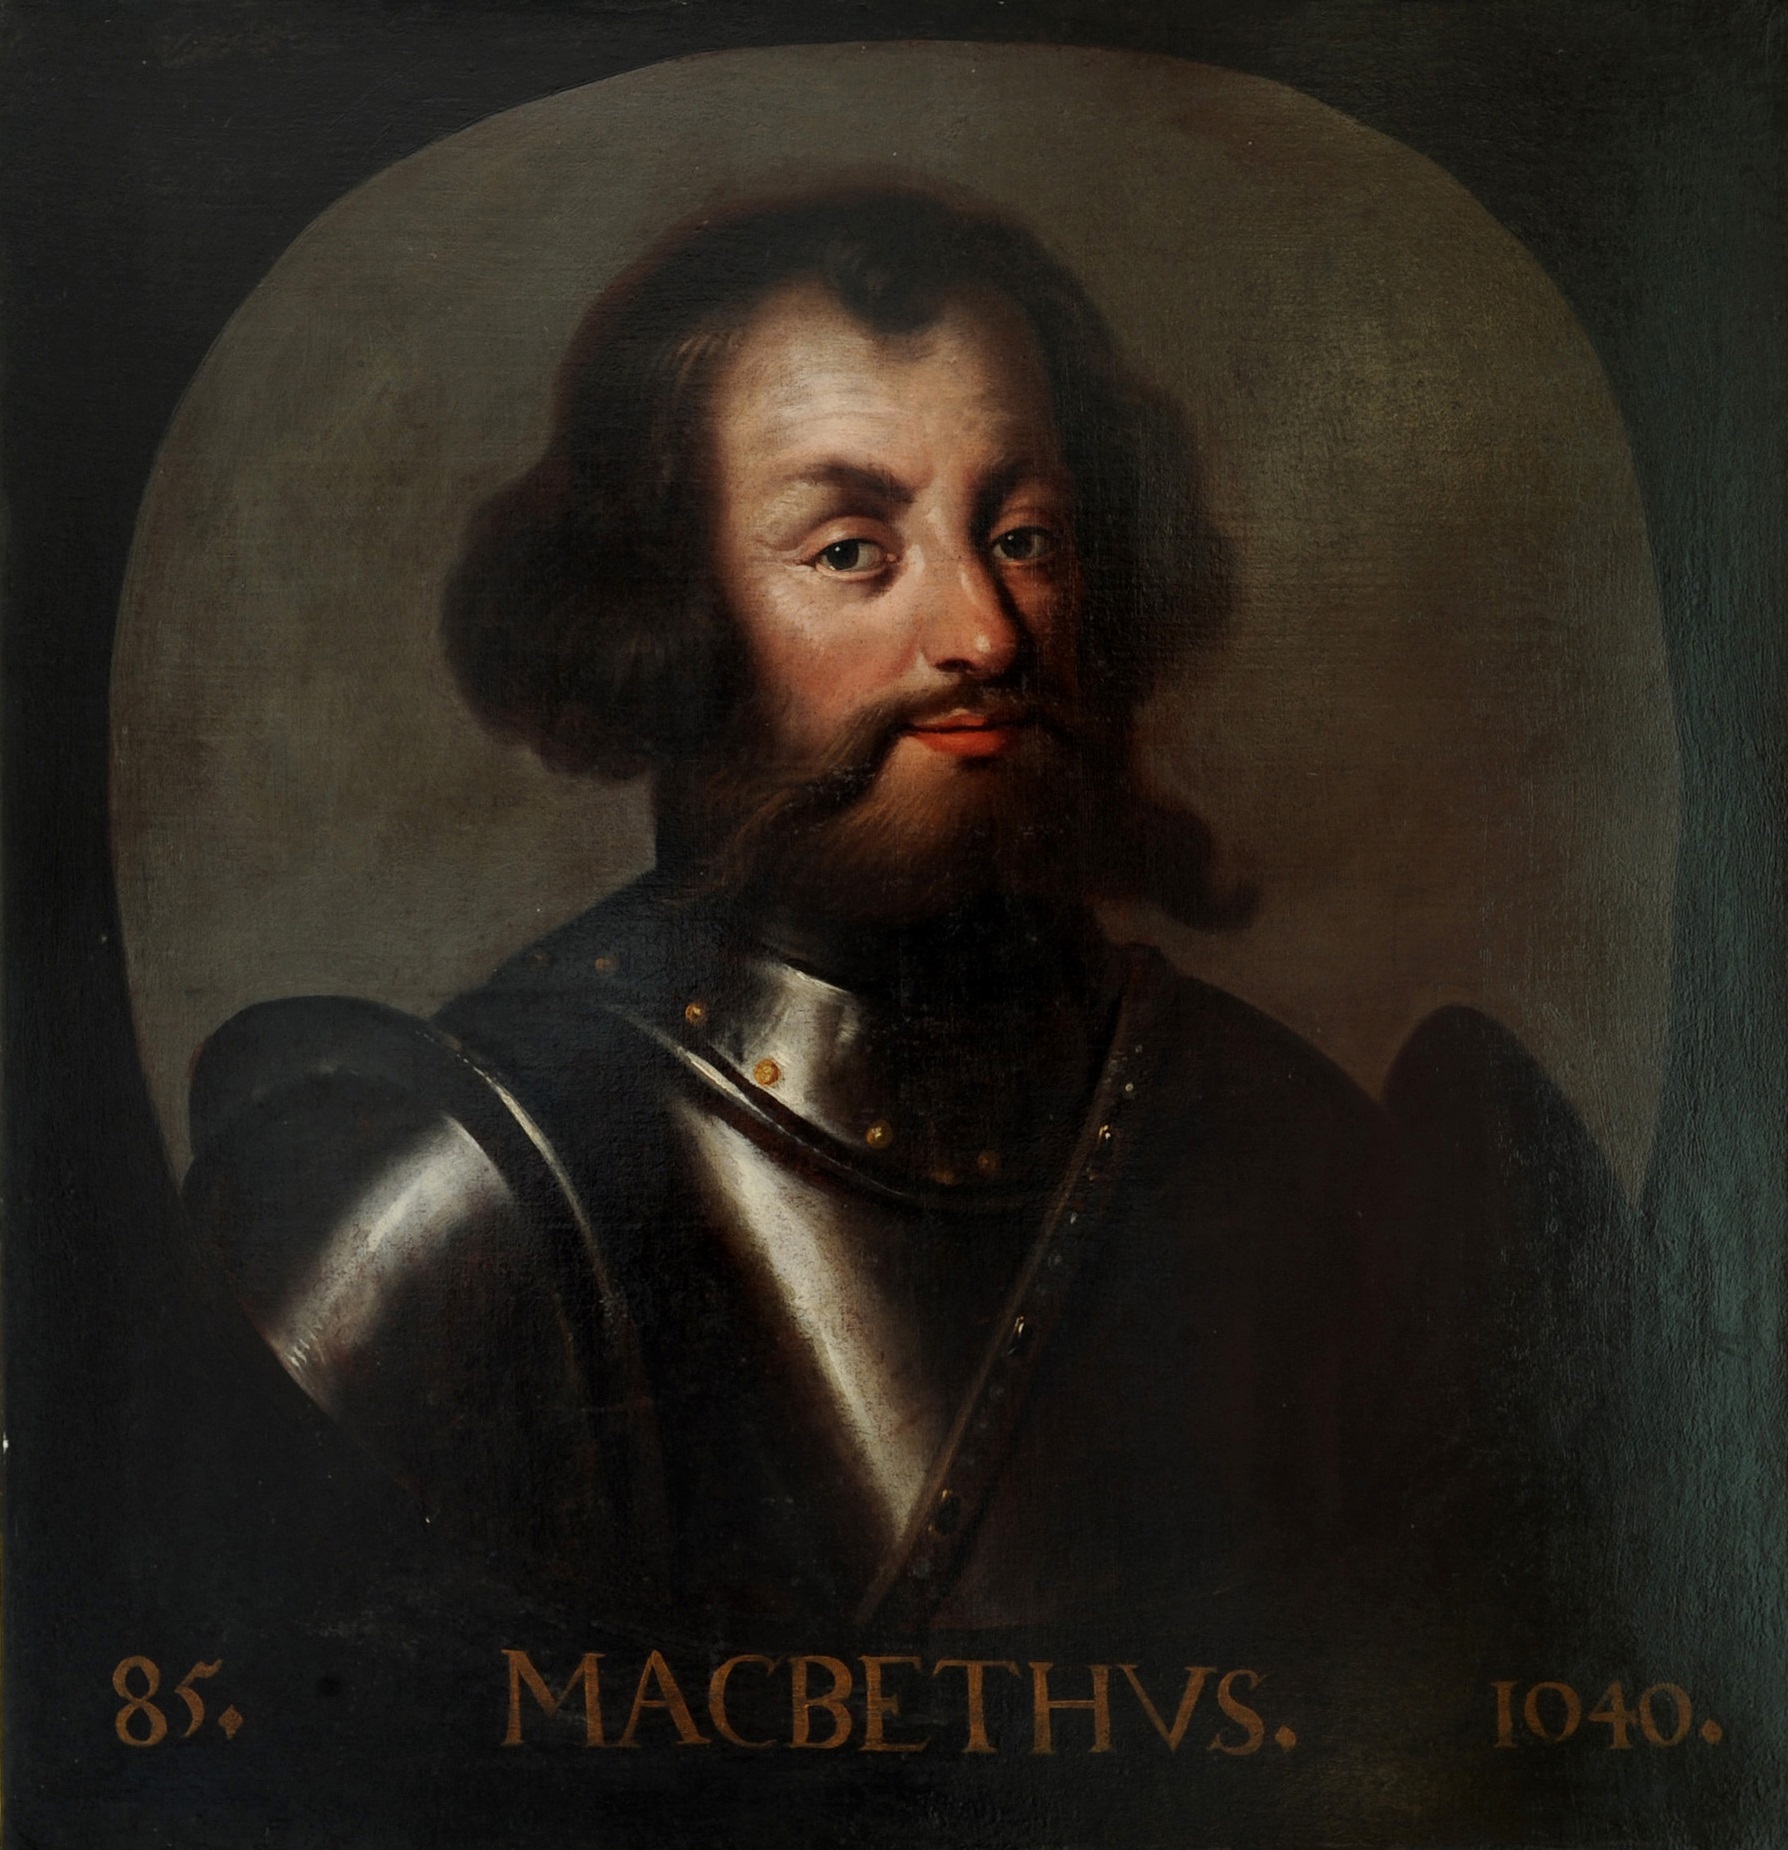 Bilde av maleri som skal forestille Kong Macbeth av Skottland (1005-1057)